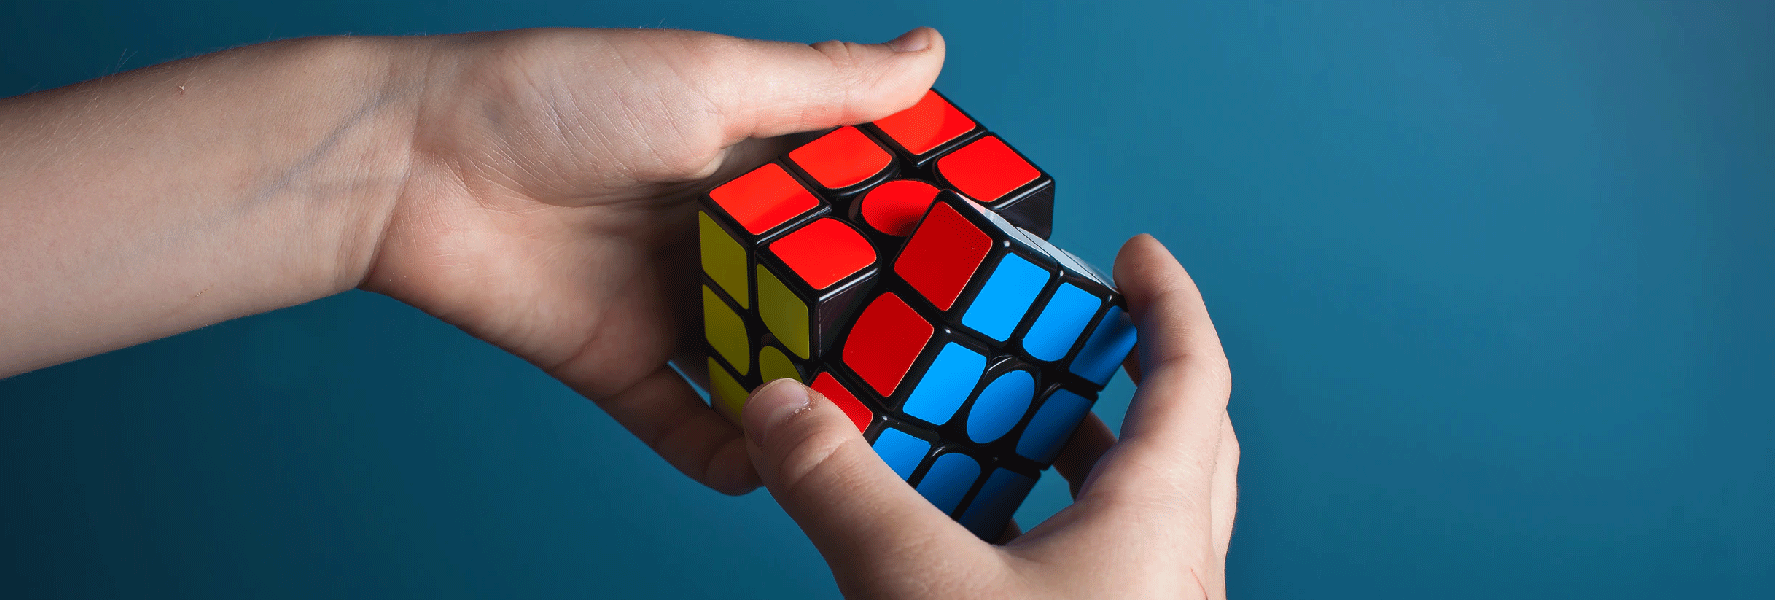 Los misterios matemáticos cubo de Rubik | OpenMind